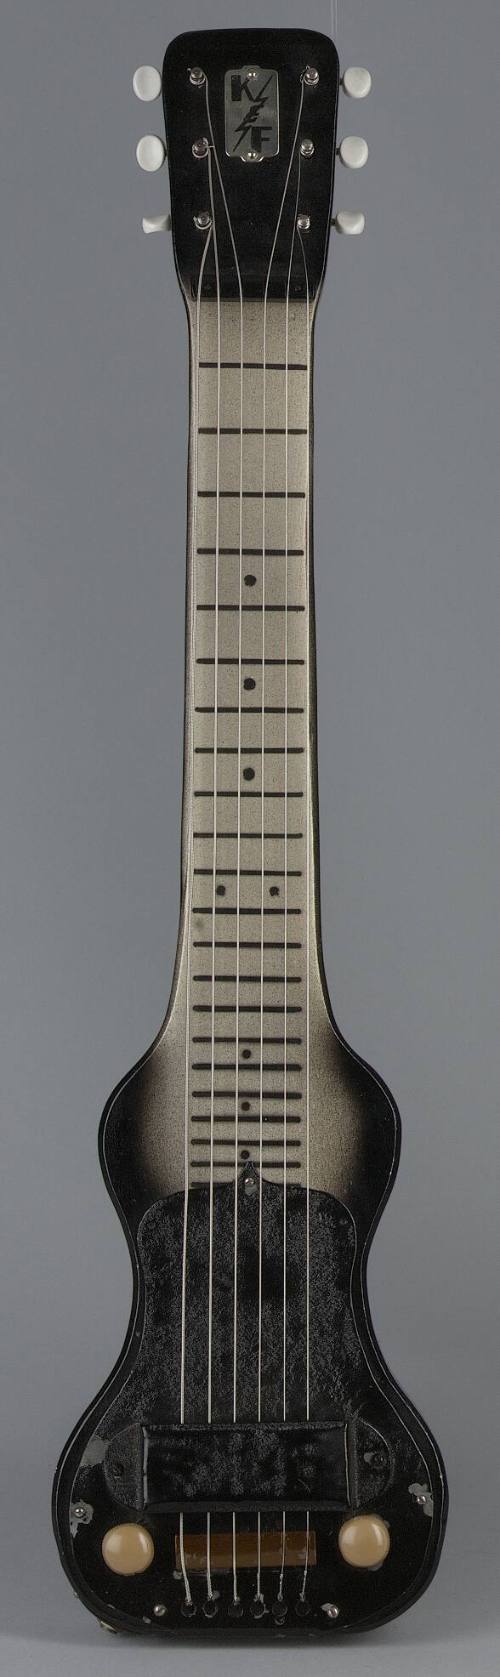 K&F Lap Steel Guitar, c.1943